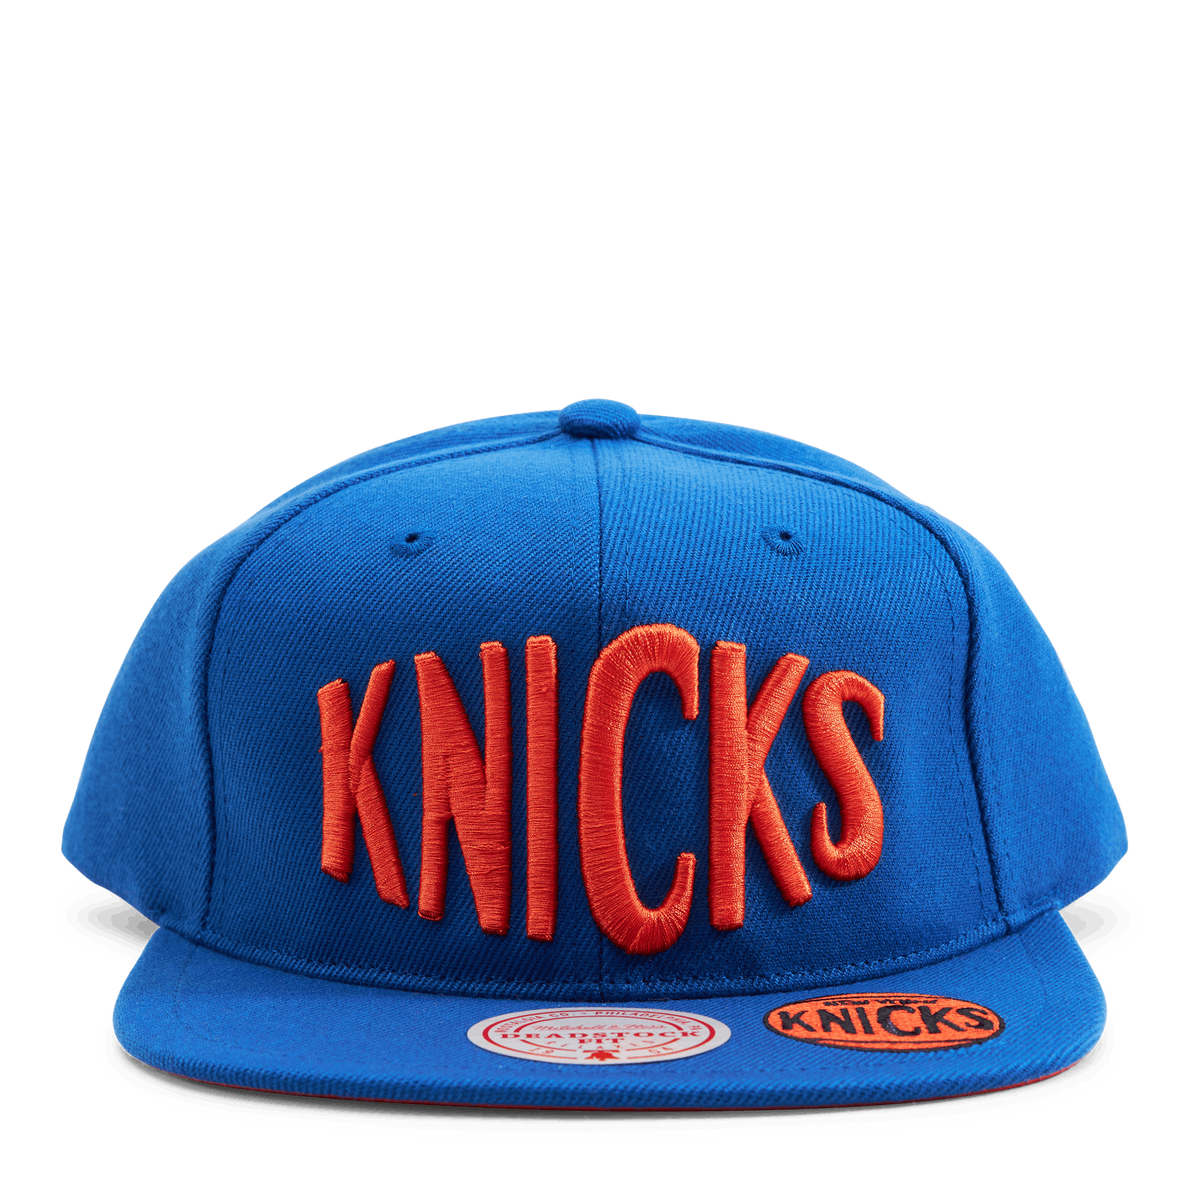 Knicks Dead Remix Deadstock Snapback